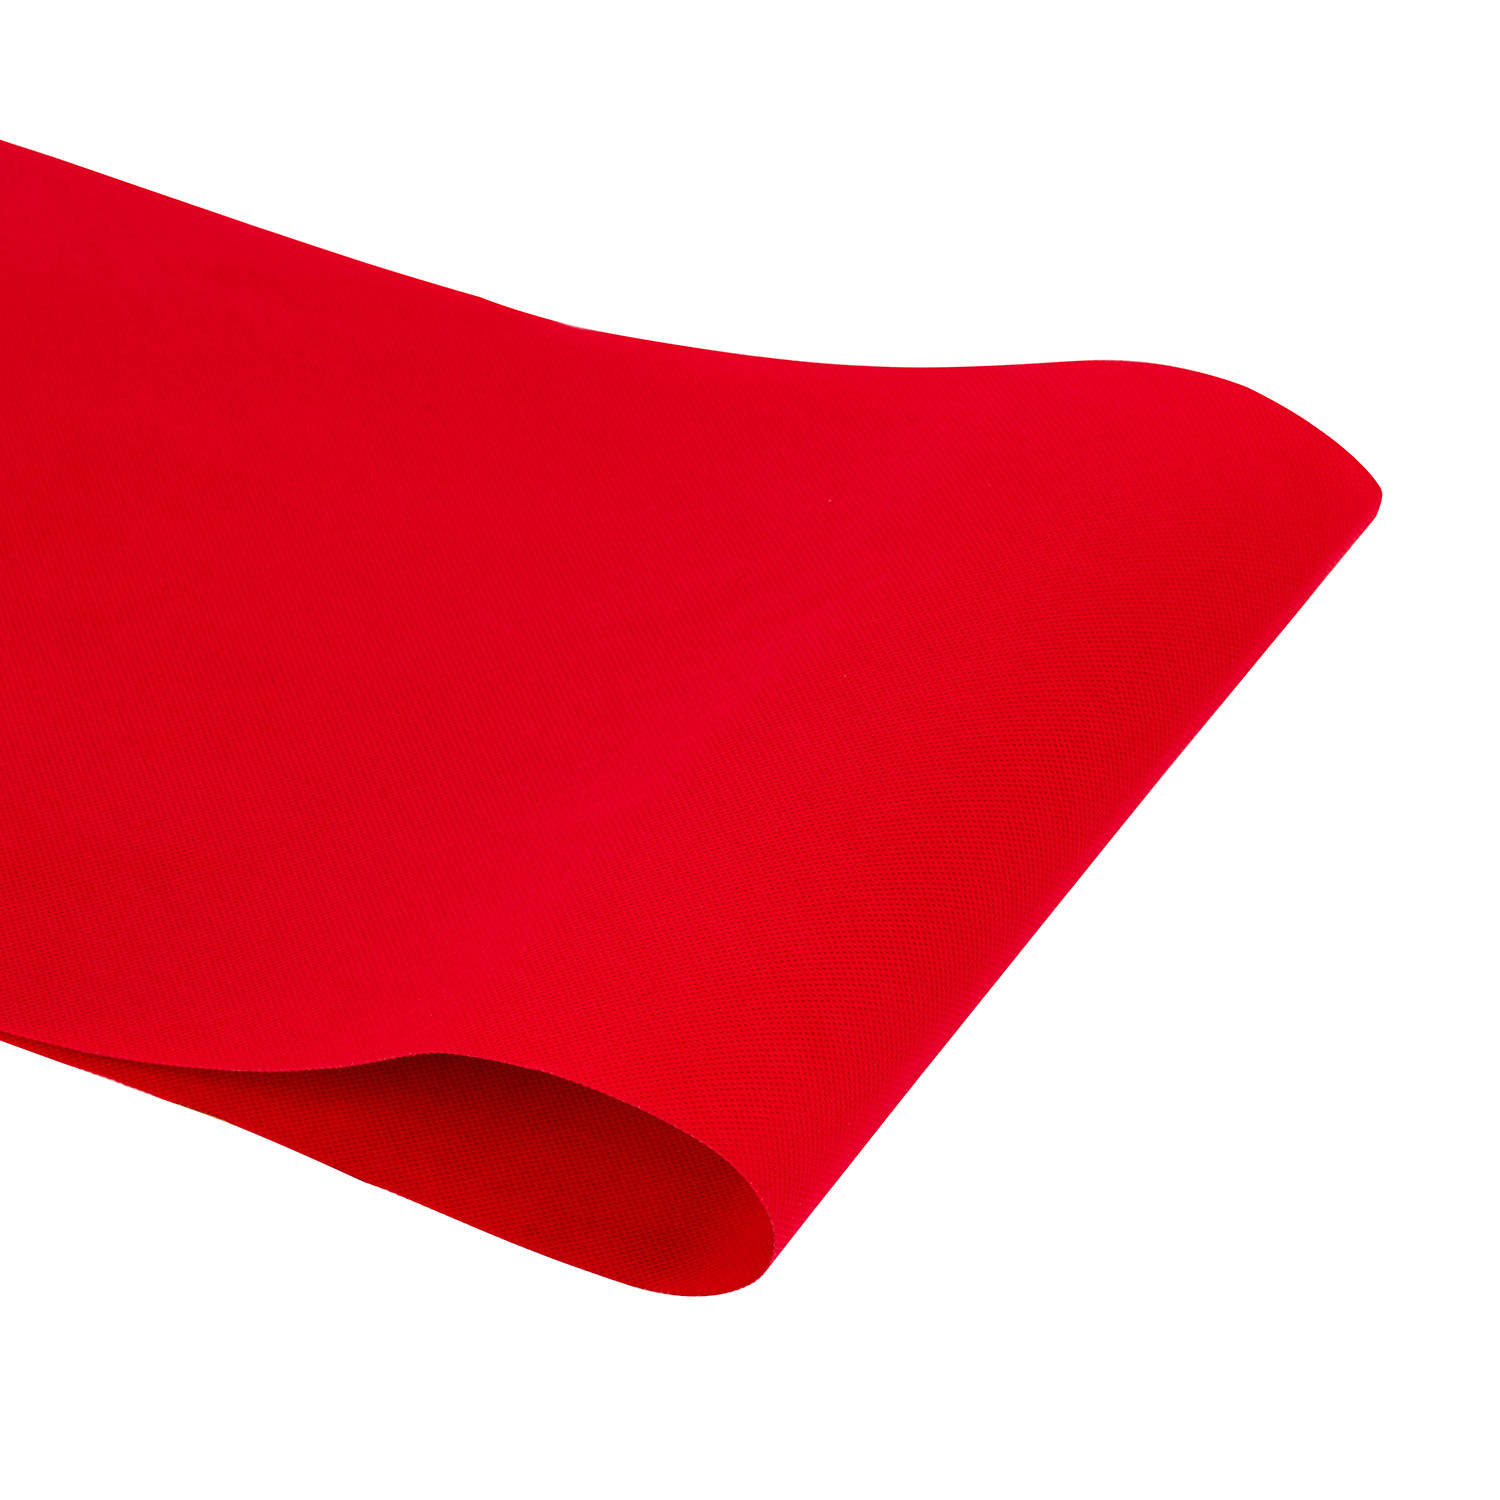 Red Rexcled Spunbonded нетканый материал для подголовника дивана